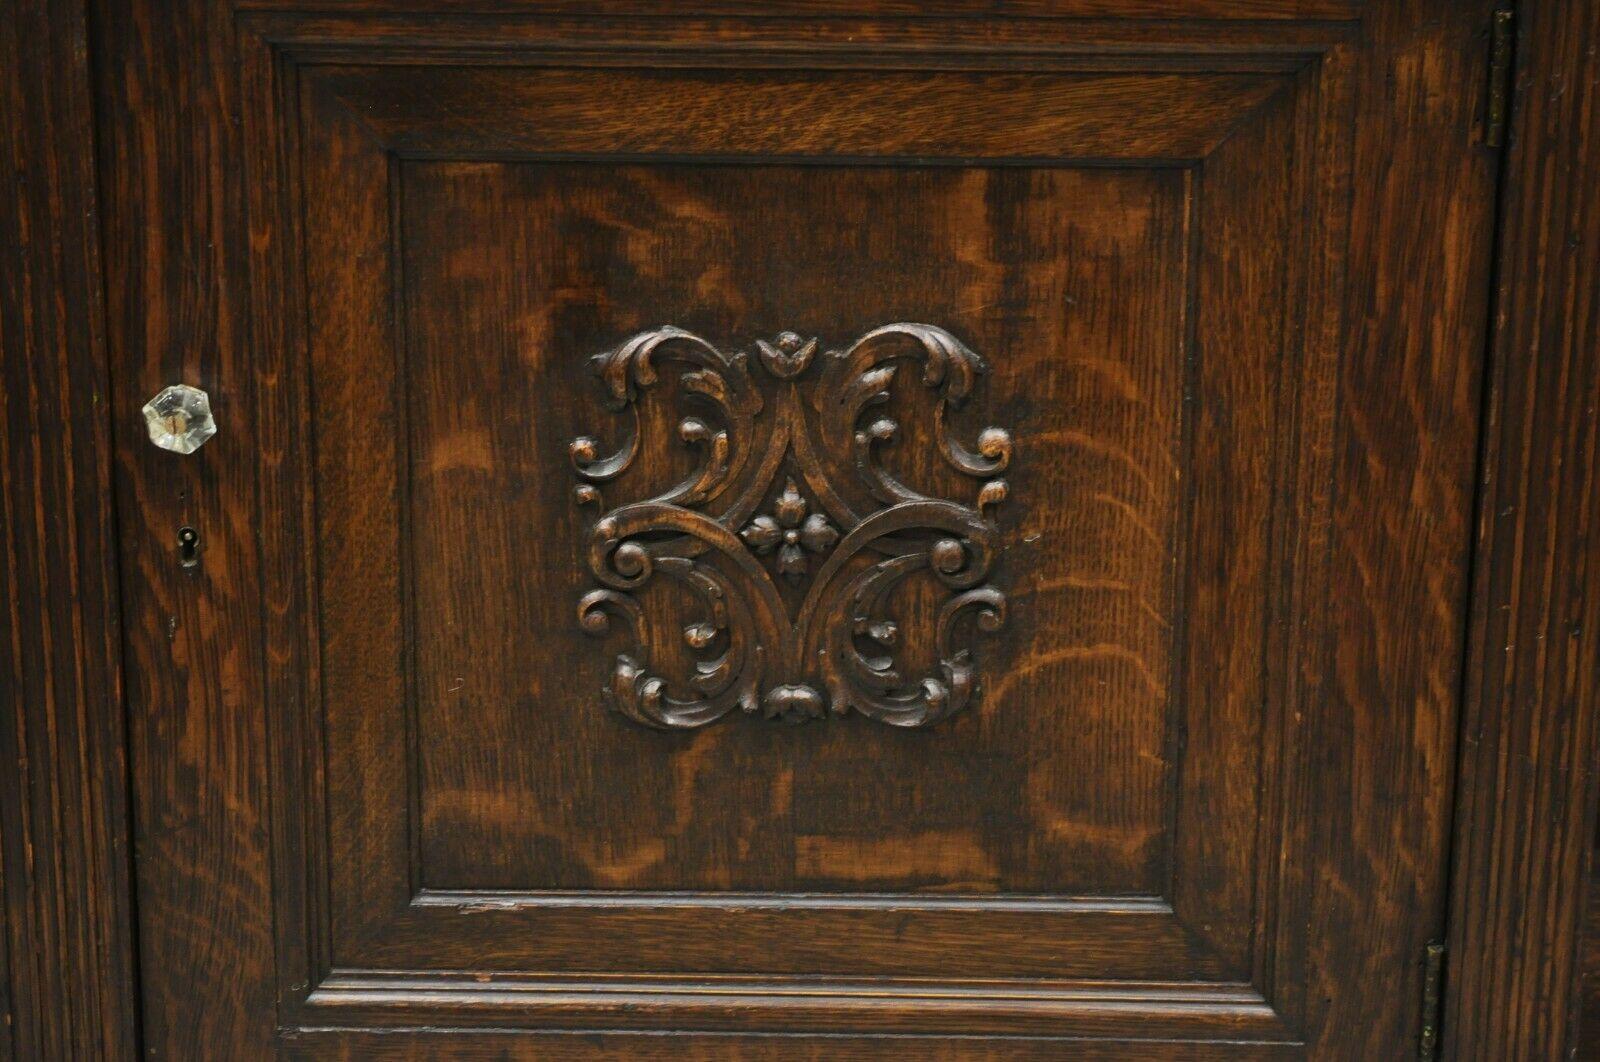 English Antique European Renaissance Oak Wood Buffet Console Cabinet Server For Sale